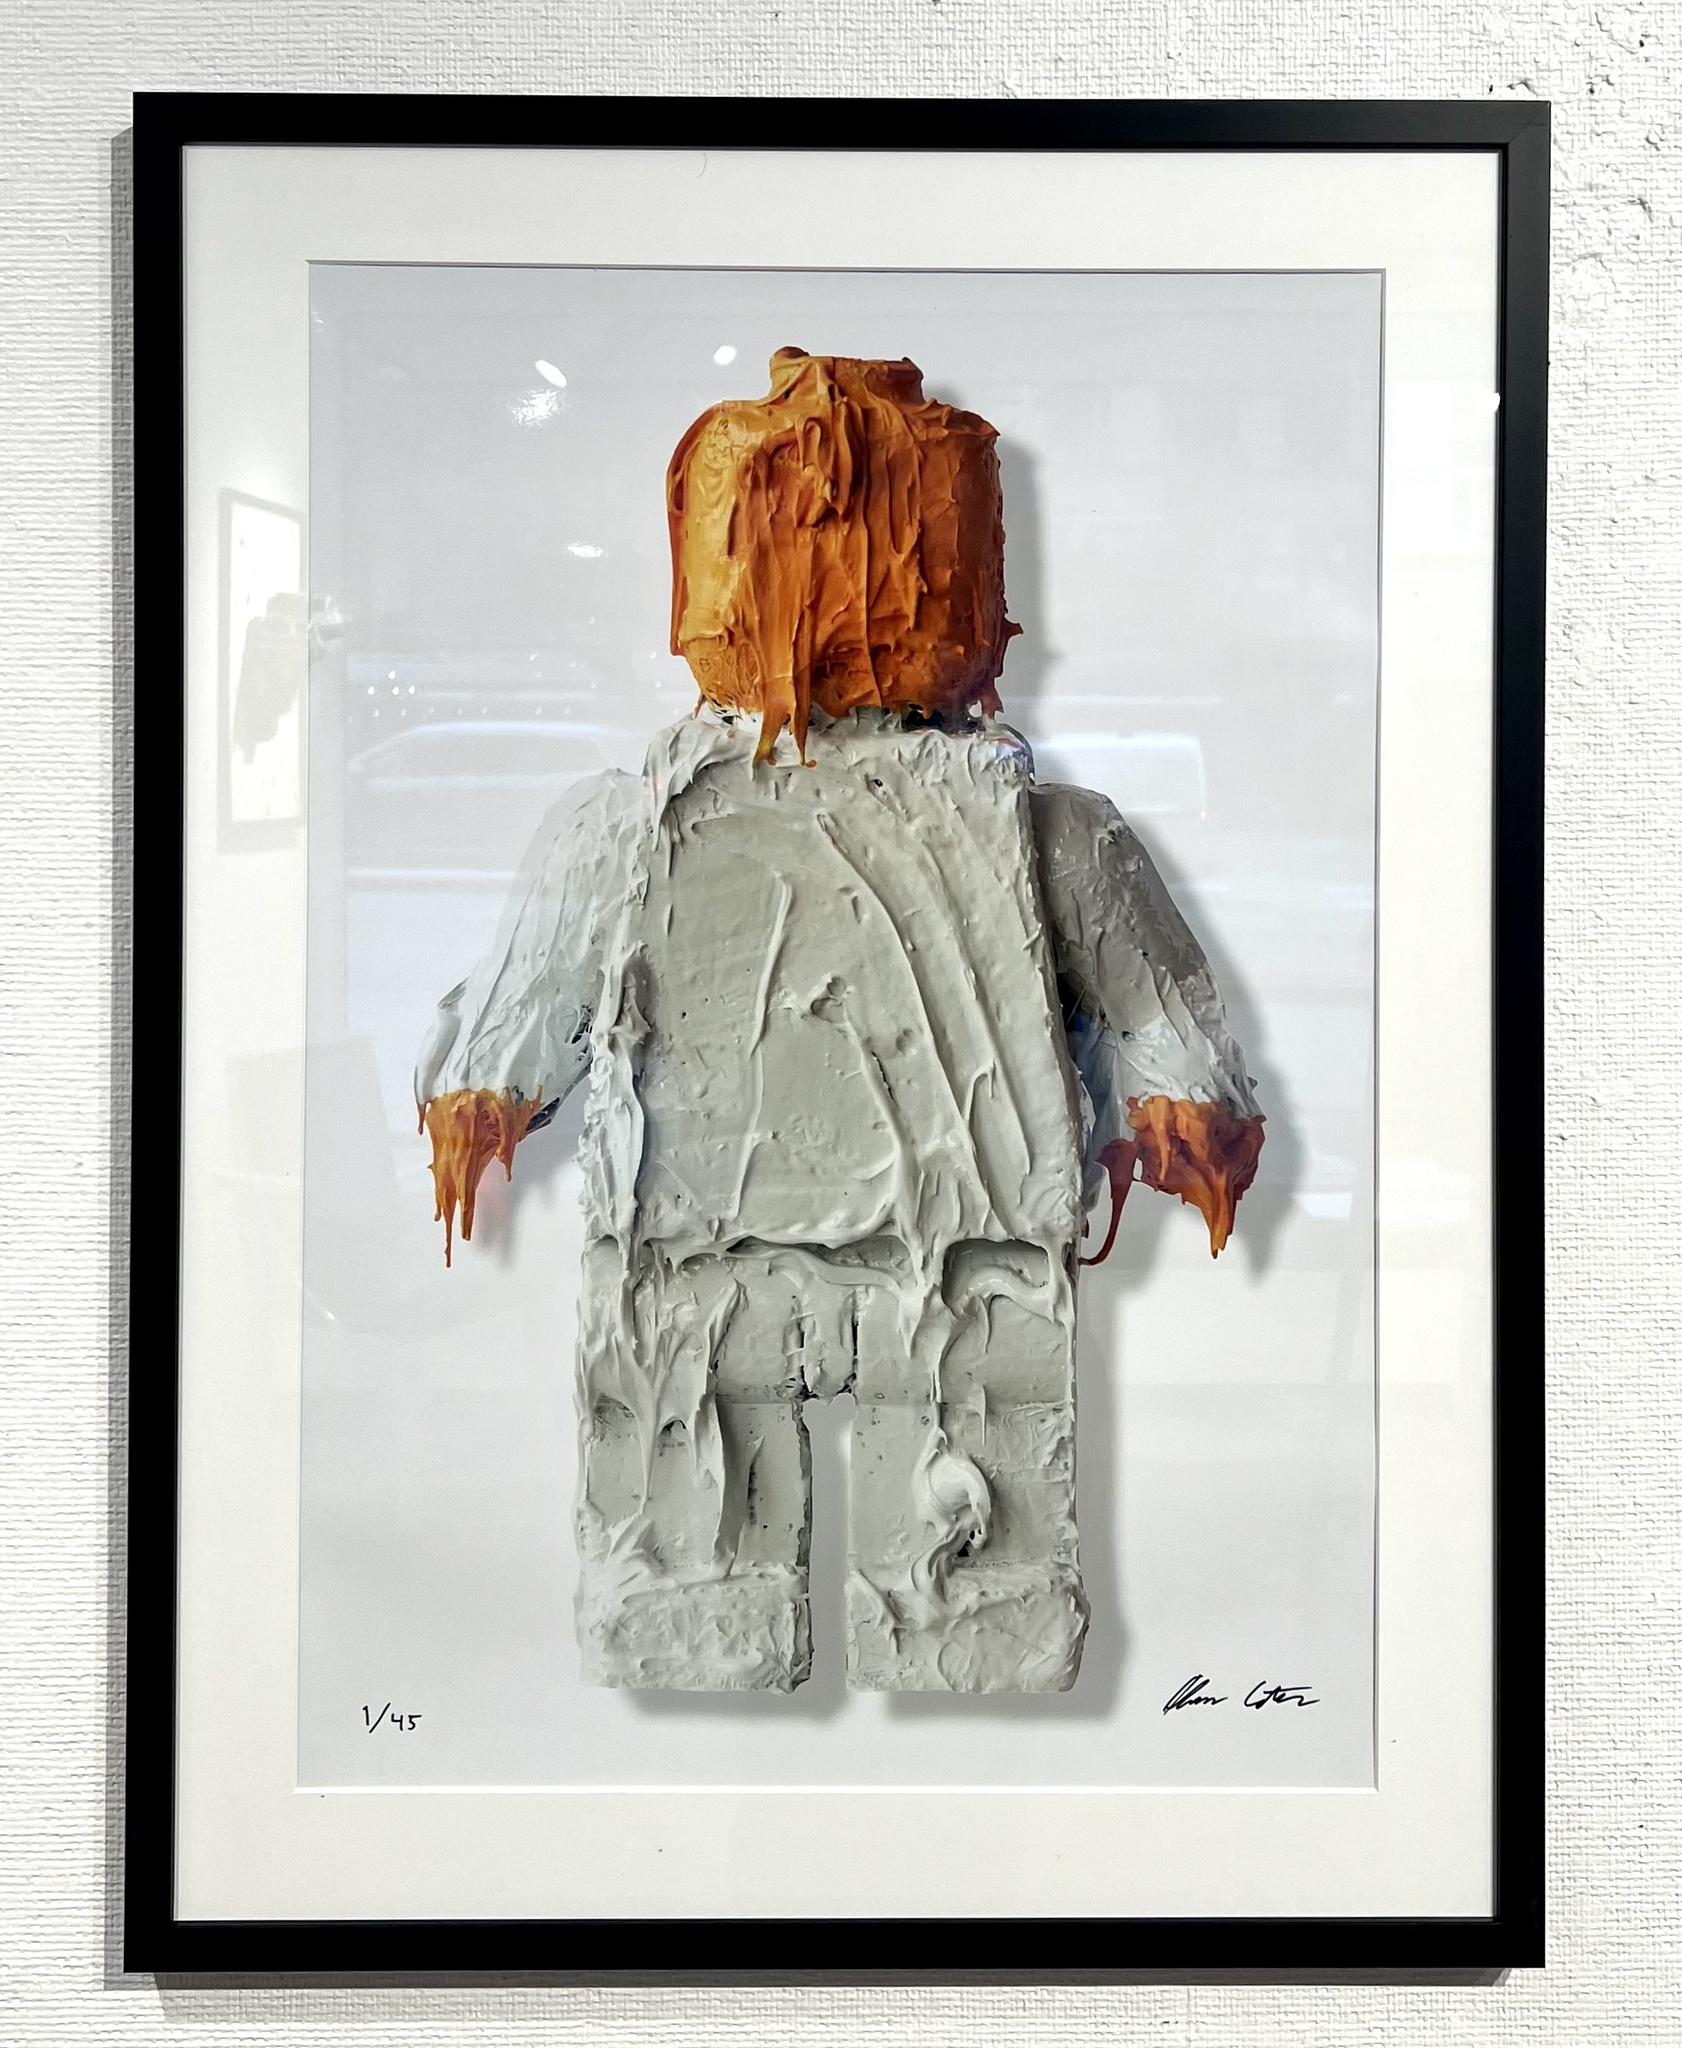 "Hands off" Fine art print av Adam Ström. Upplaga 45. 50x70 cm